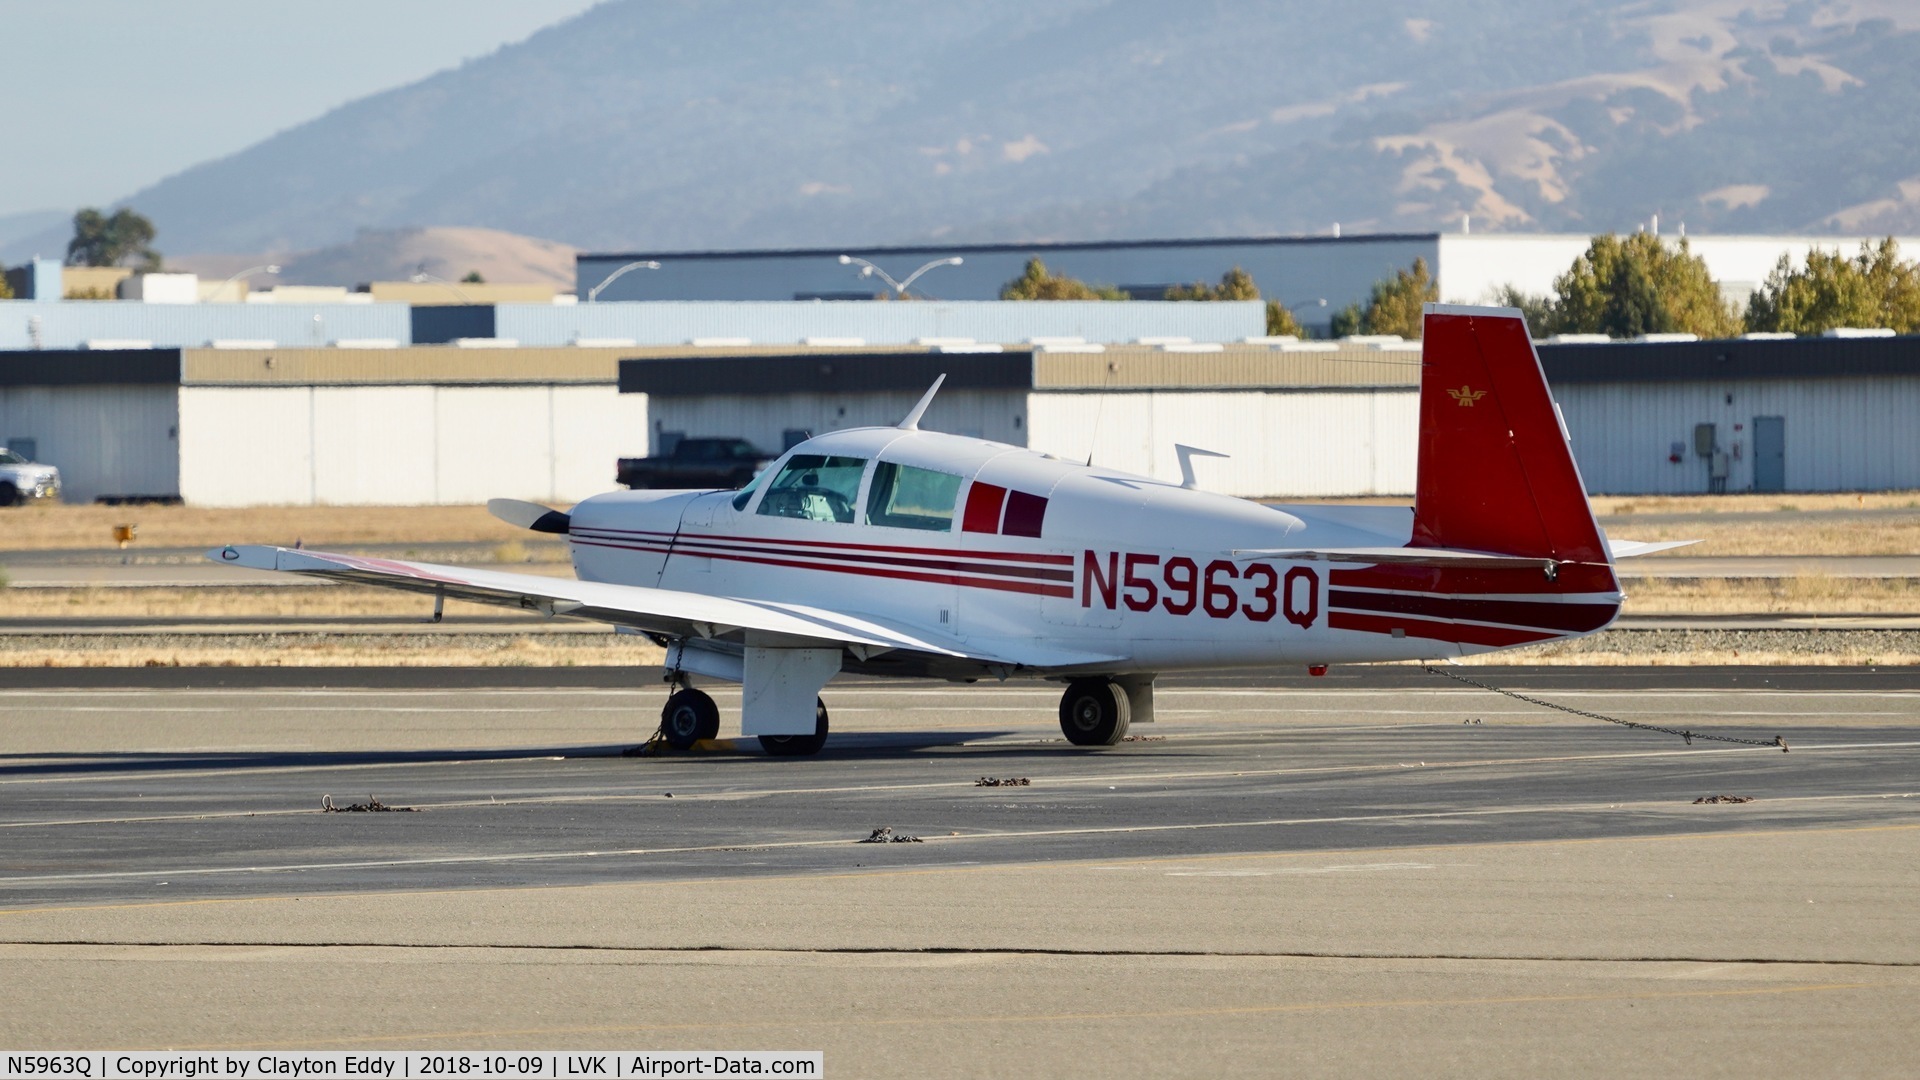 N5963Q, 1965 Mooney M20C Ranger C/N 3199, Livermore Airport California 2018.